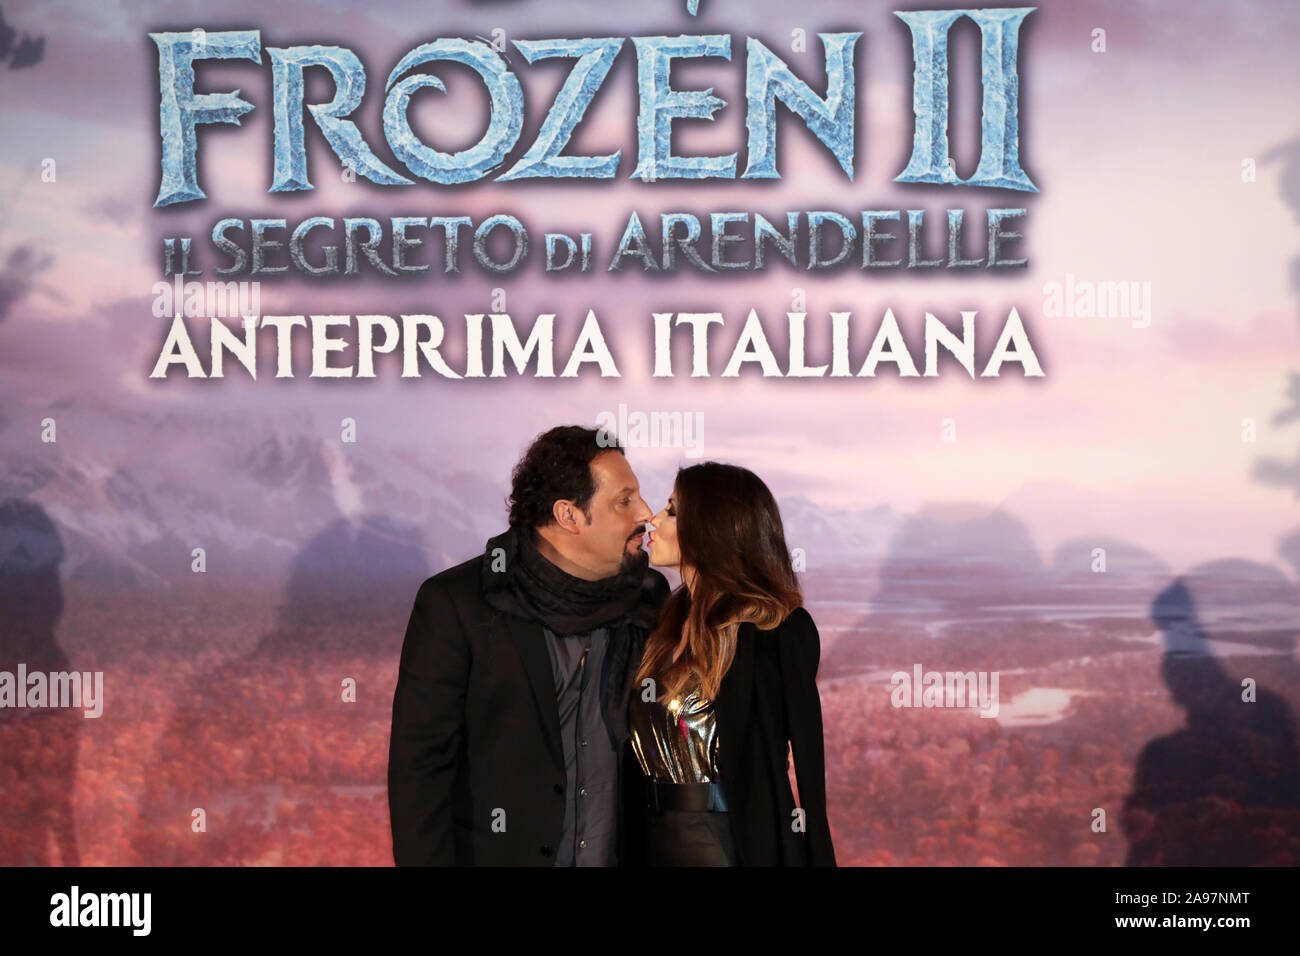 Roma, Italia - 12 de noviembre de 2019: Enrico Brignano (OLAF) con Flora canto participan en la alfombra roja en la previsualización de la película 'Frozen 2 - El Secreto de Arendelle', en el espacio de cine Moderno. Foto de stock